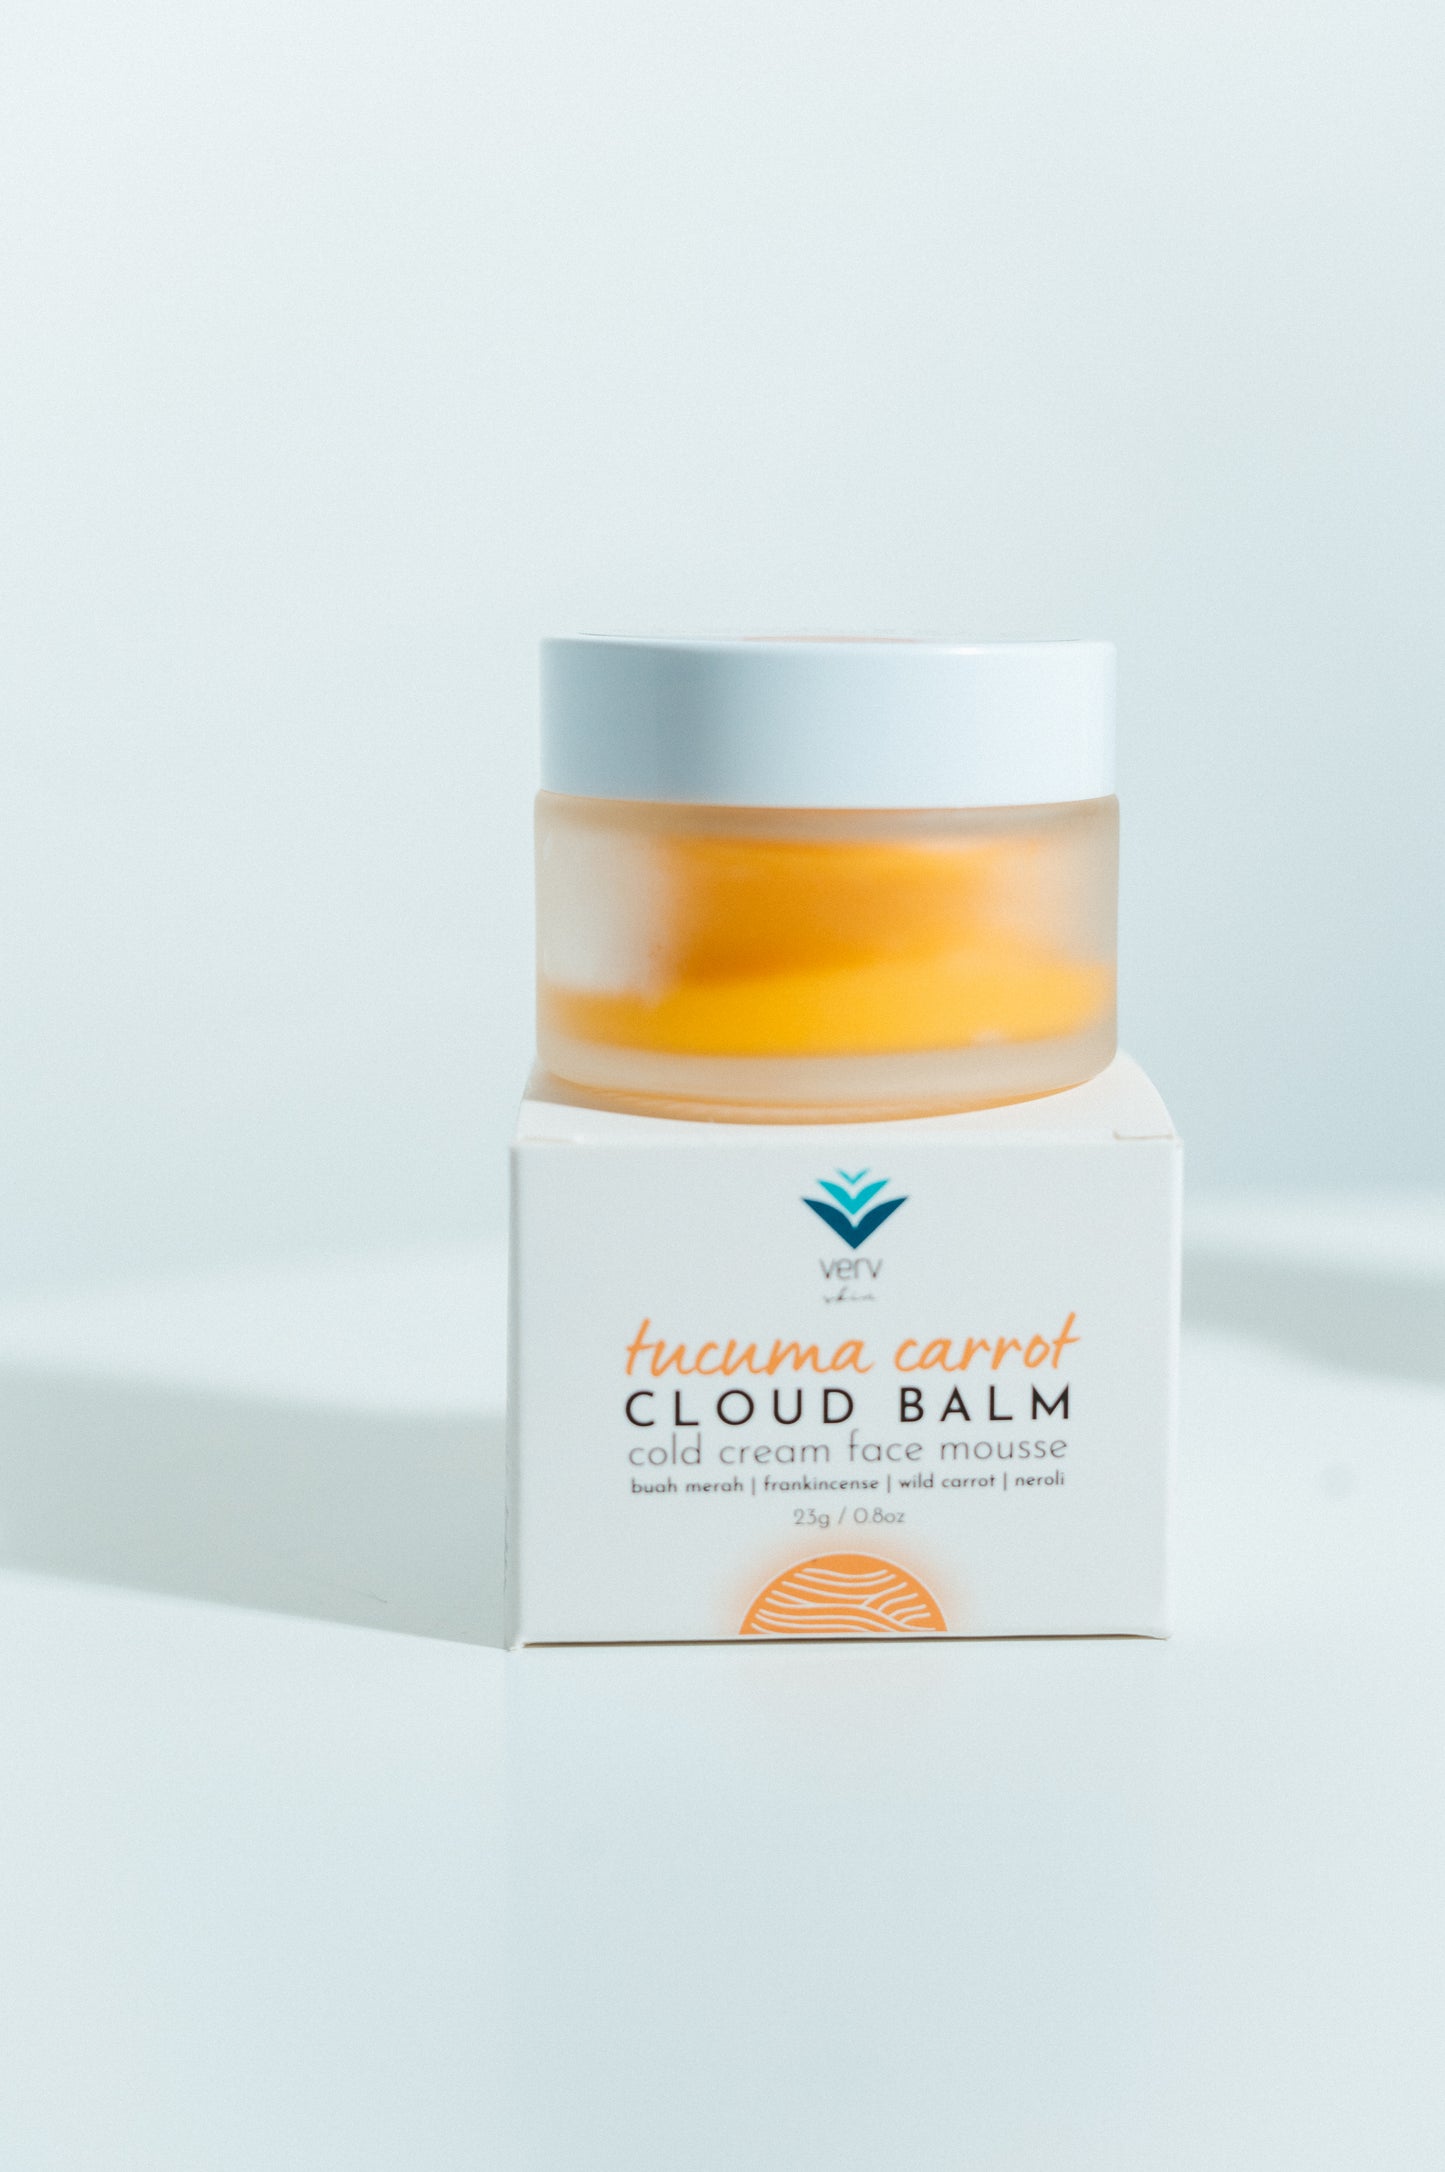 Tucuma Carrot Cloud Balm | Cold Cream Face Mousse